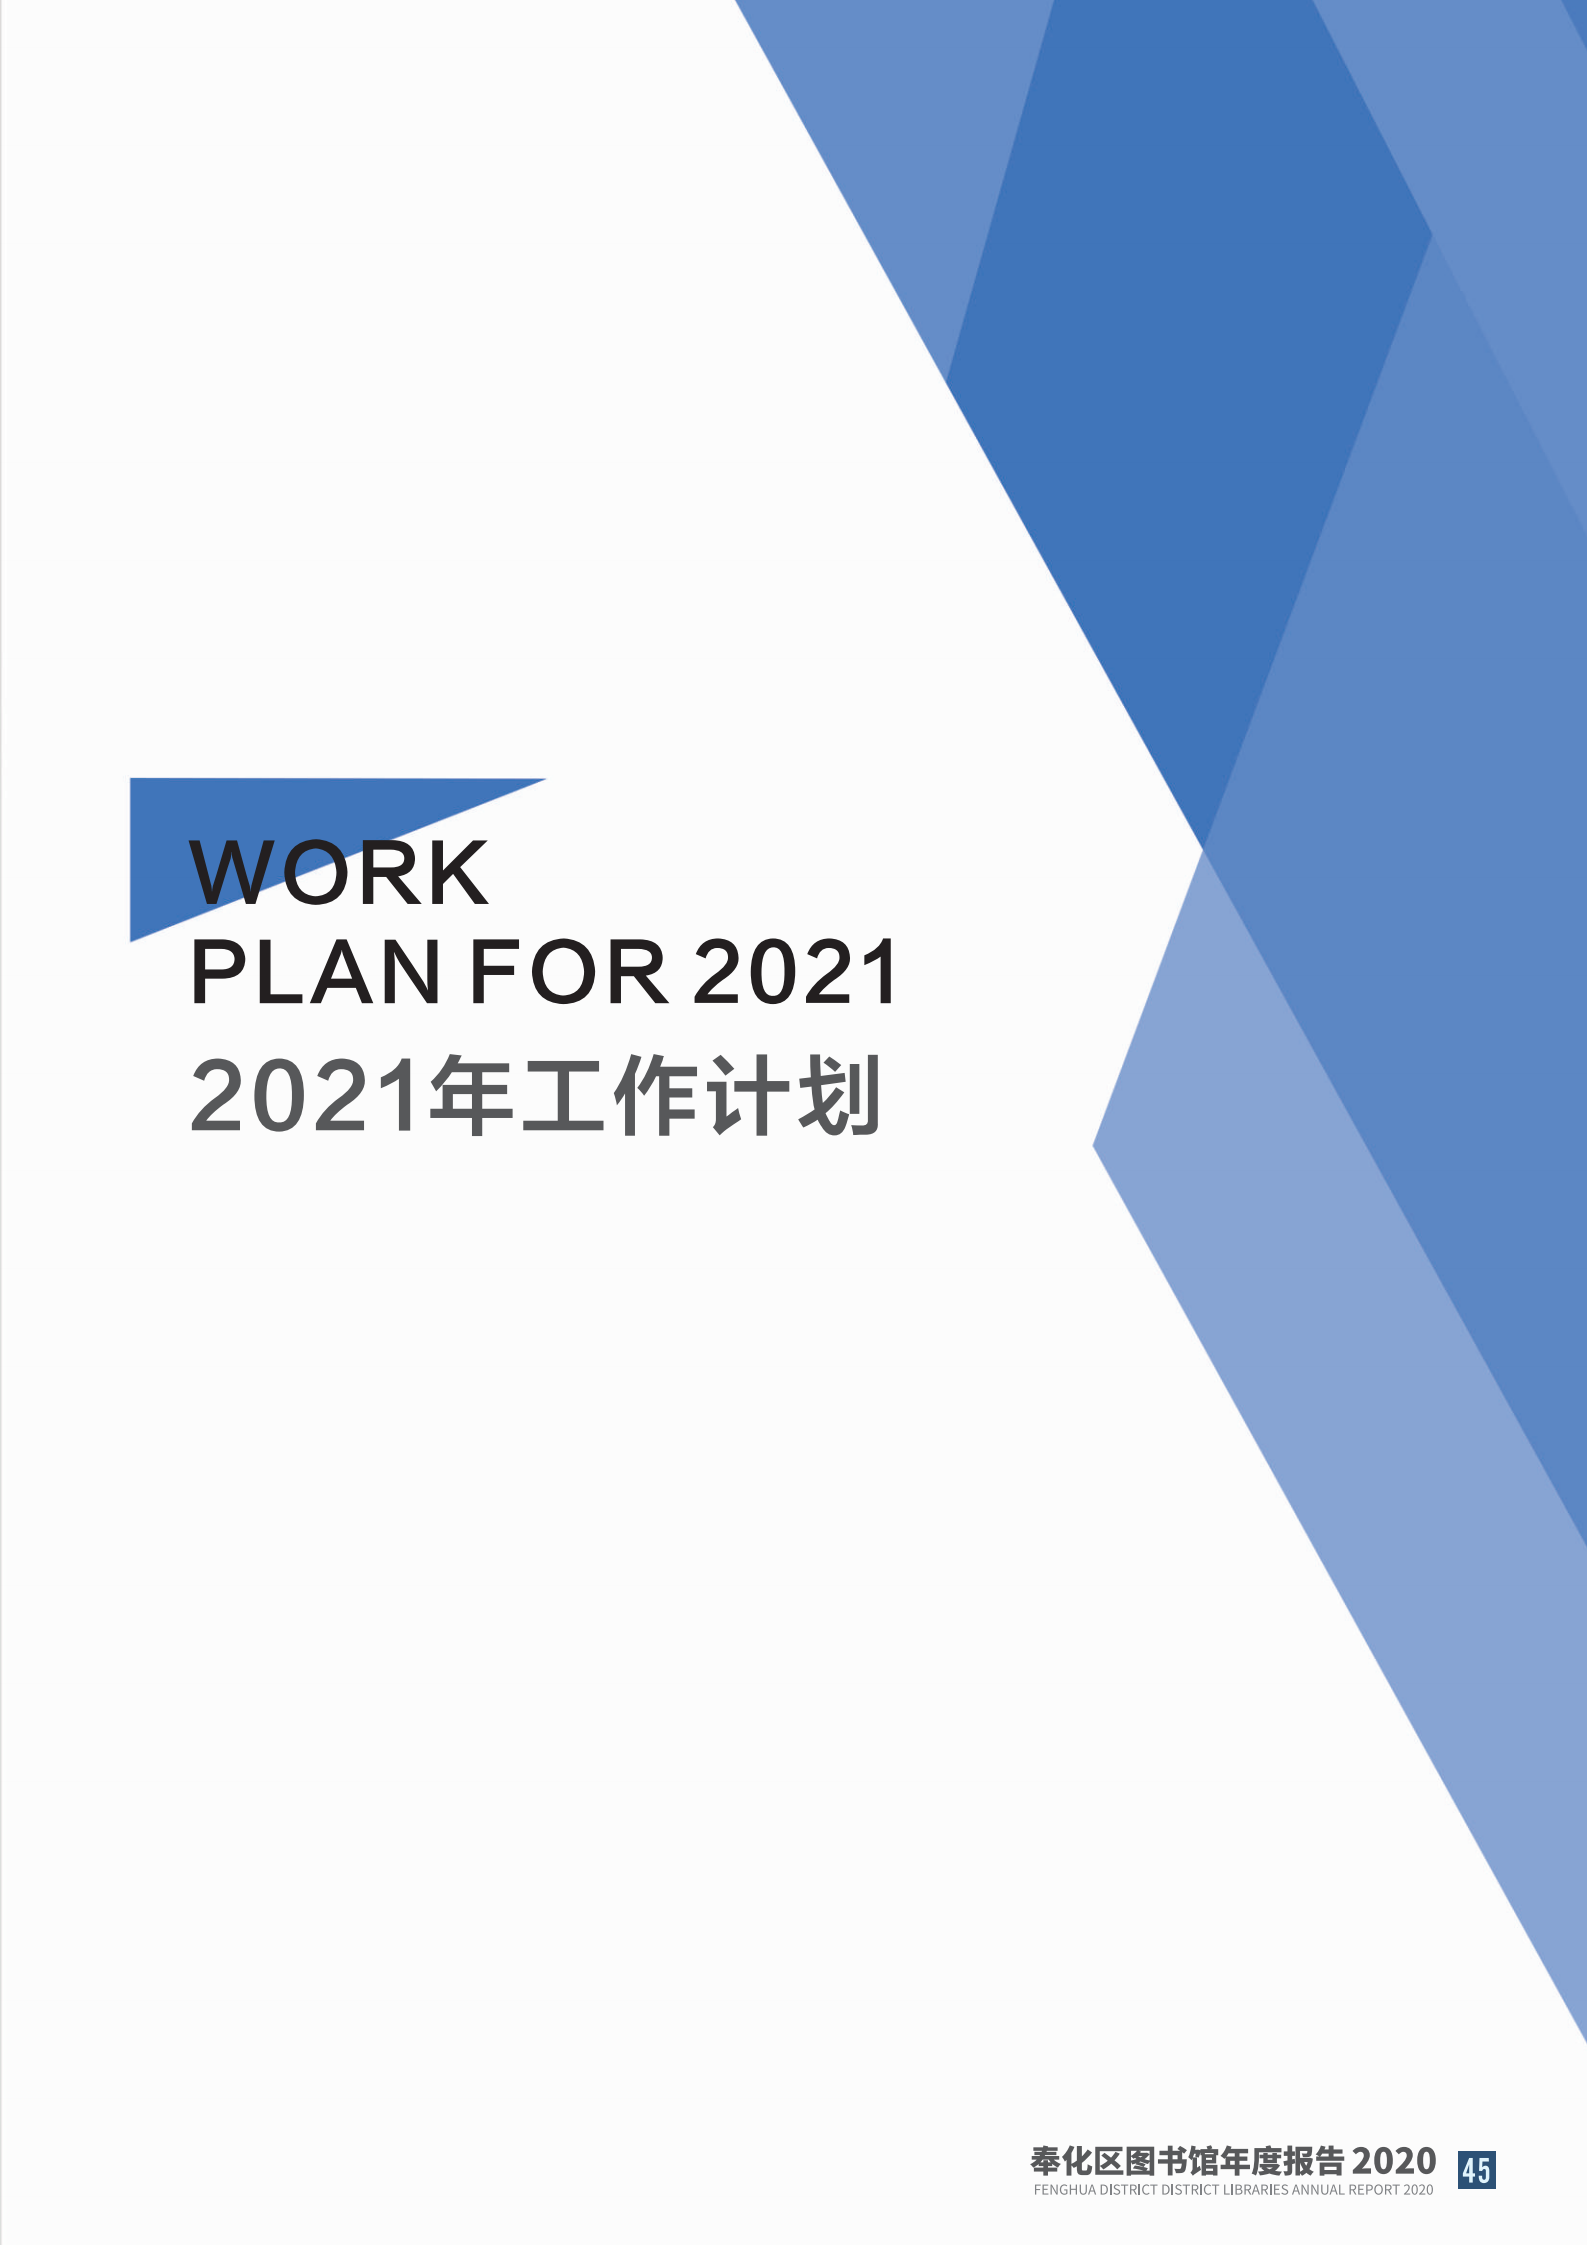 宁波市奉化区图书馆2020年年度报告 终稿_45.png